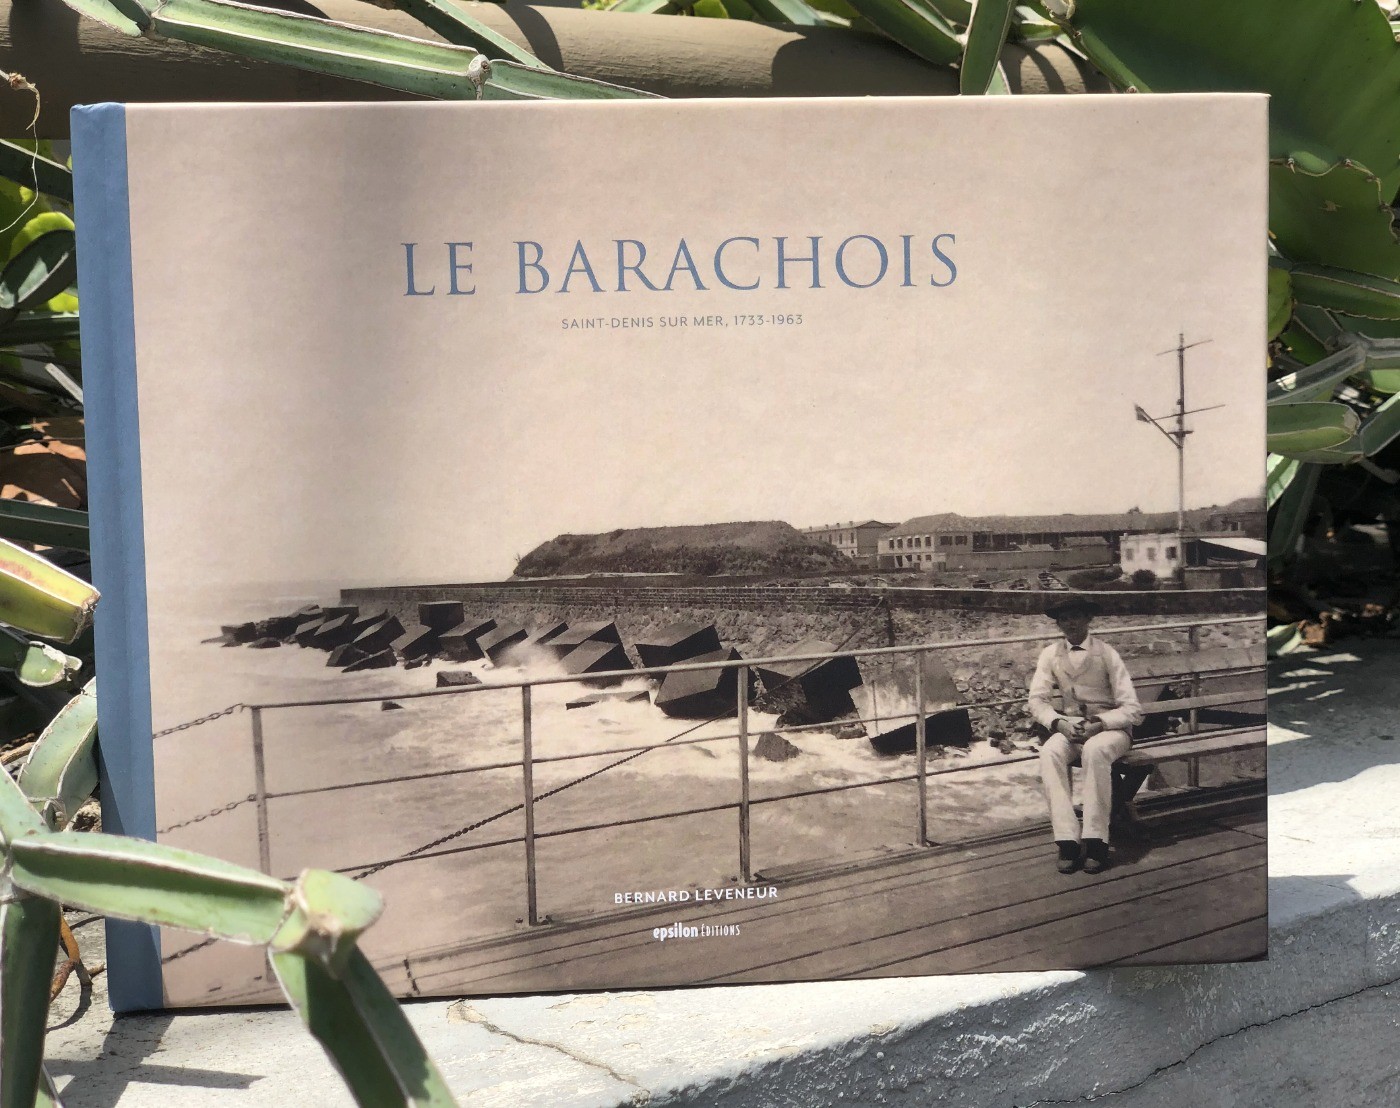 Le Barachois: Saint-Denis sur mer, 1733-1963